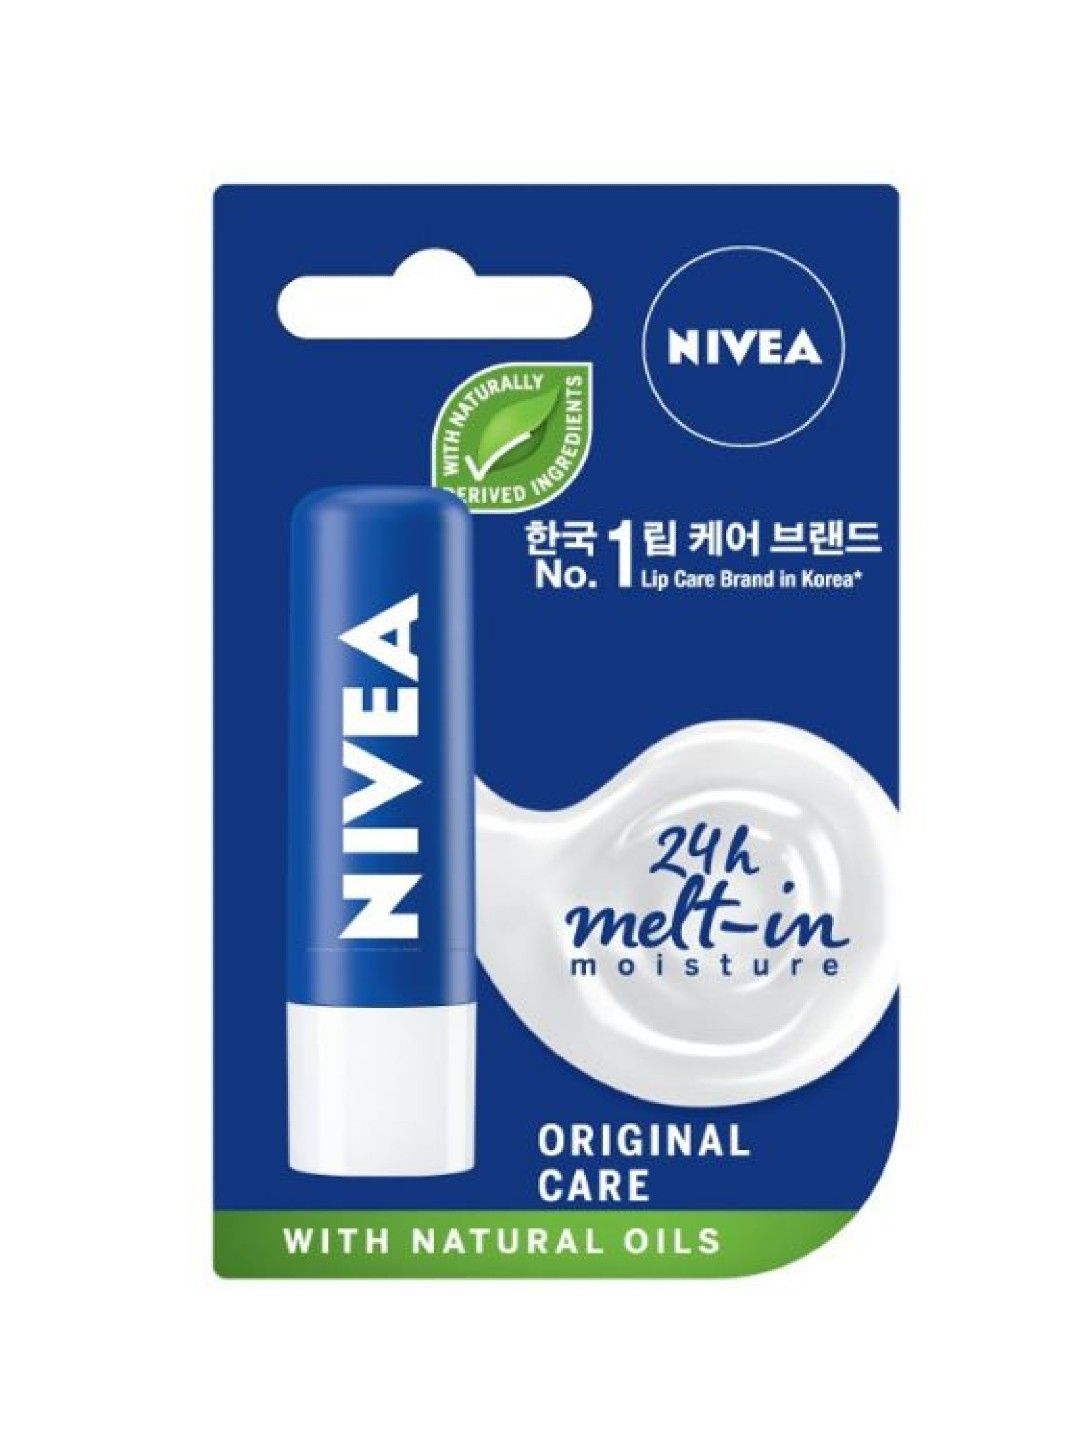 NIVEA Lip Care Original Care Lip Balm, 5.5ml